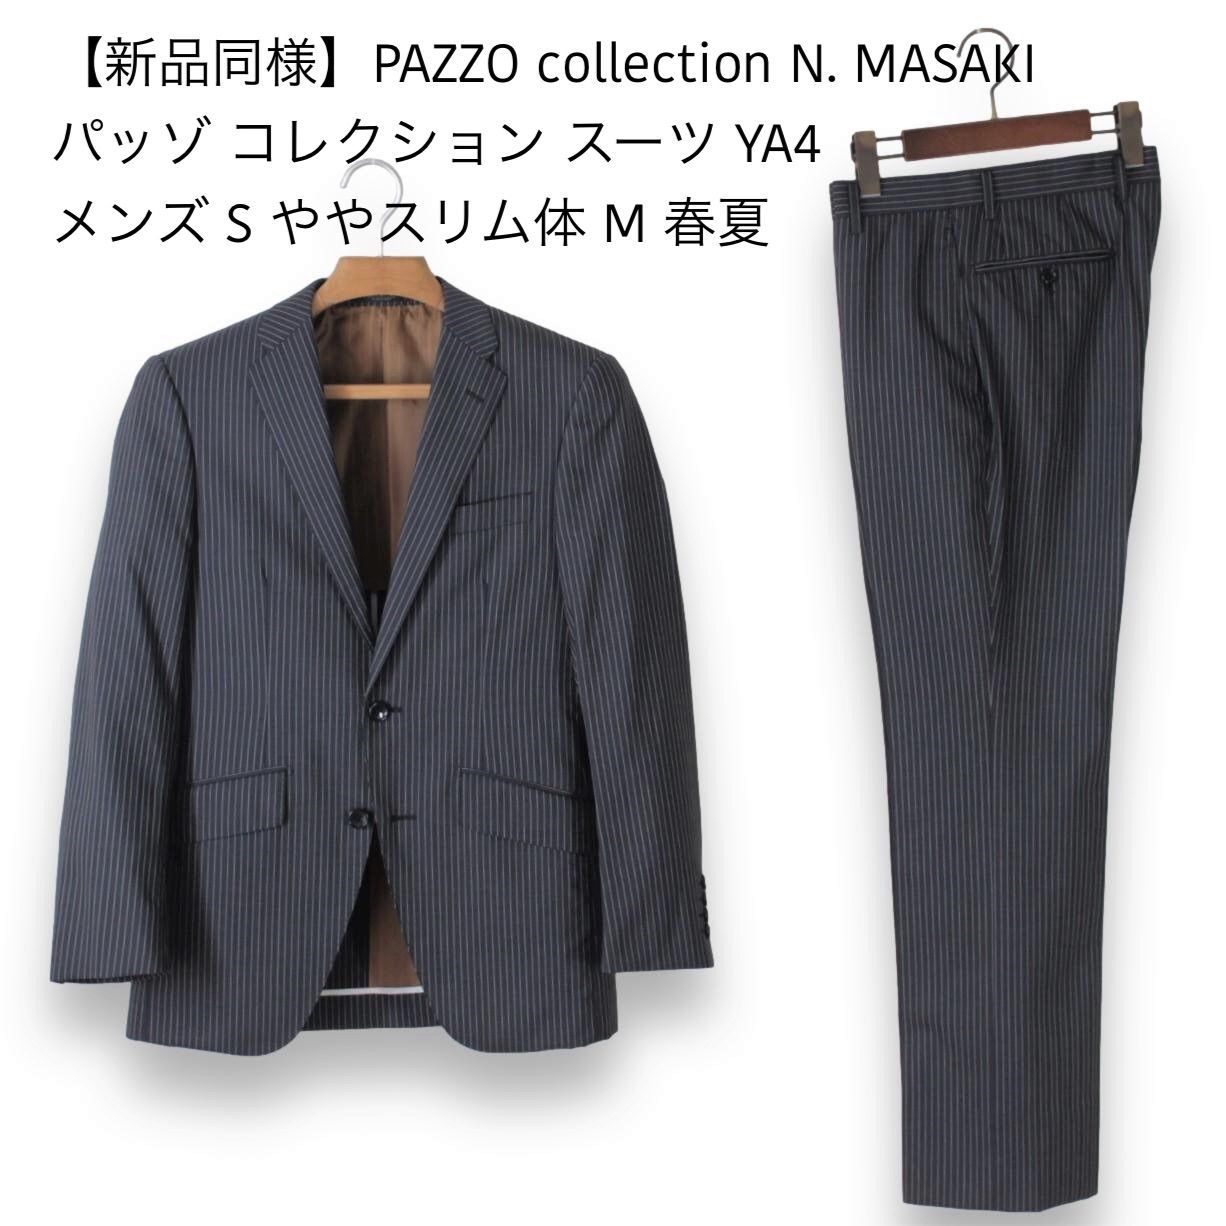 【新品同様】PAZZO collection N. MASAKI パッゾ コレクション スーツ YA4 メンズ S ややスリム体 M ★未使用